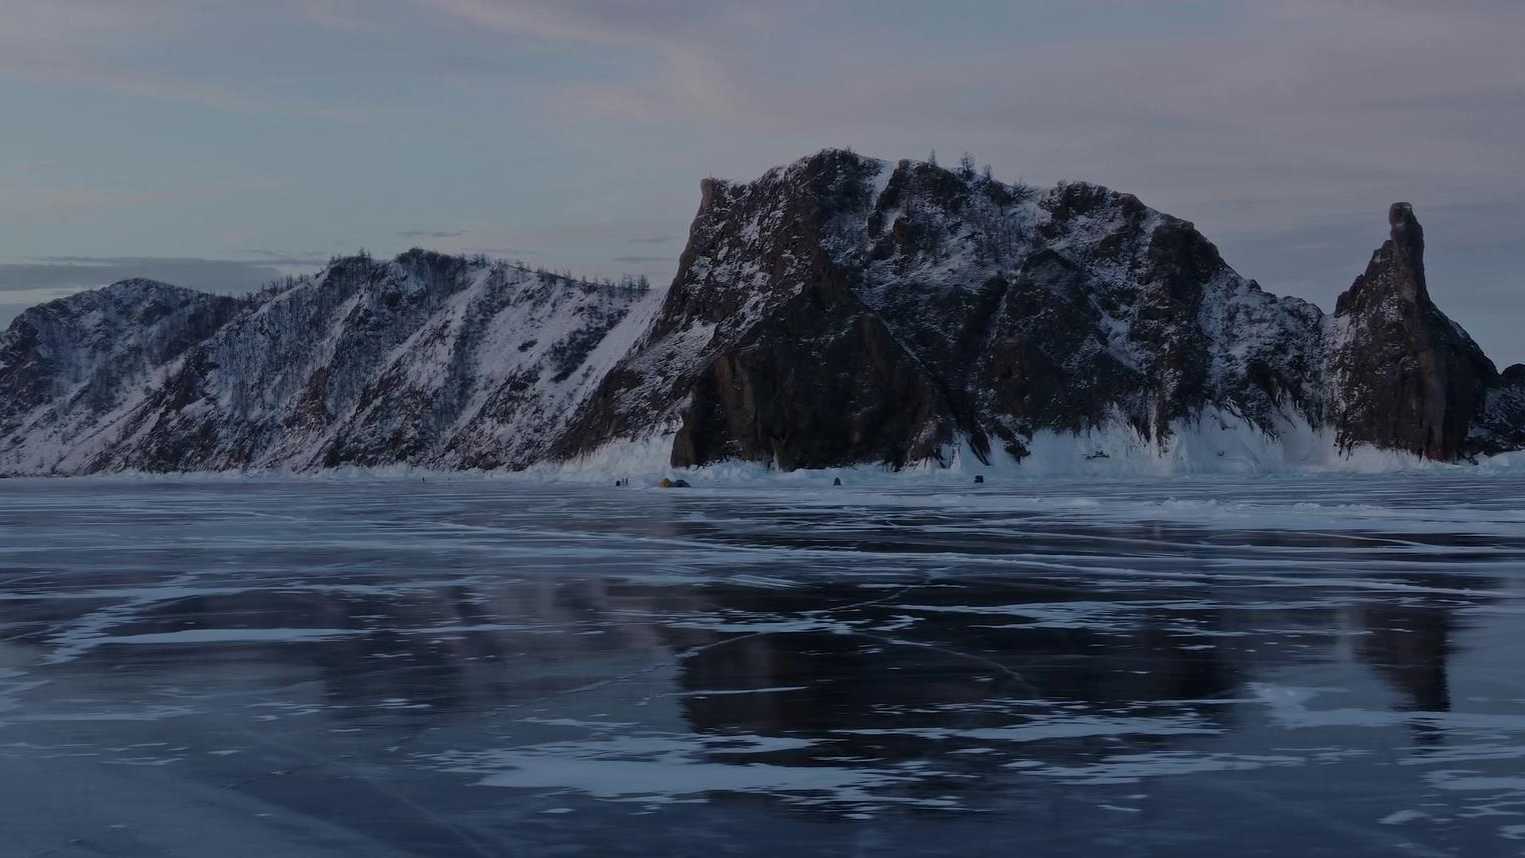 冰雪冻结的绝美画卷《贝加尔湖畔》